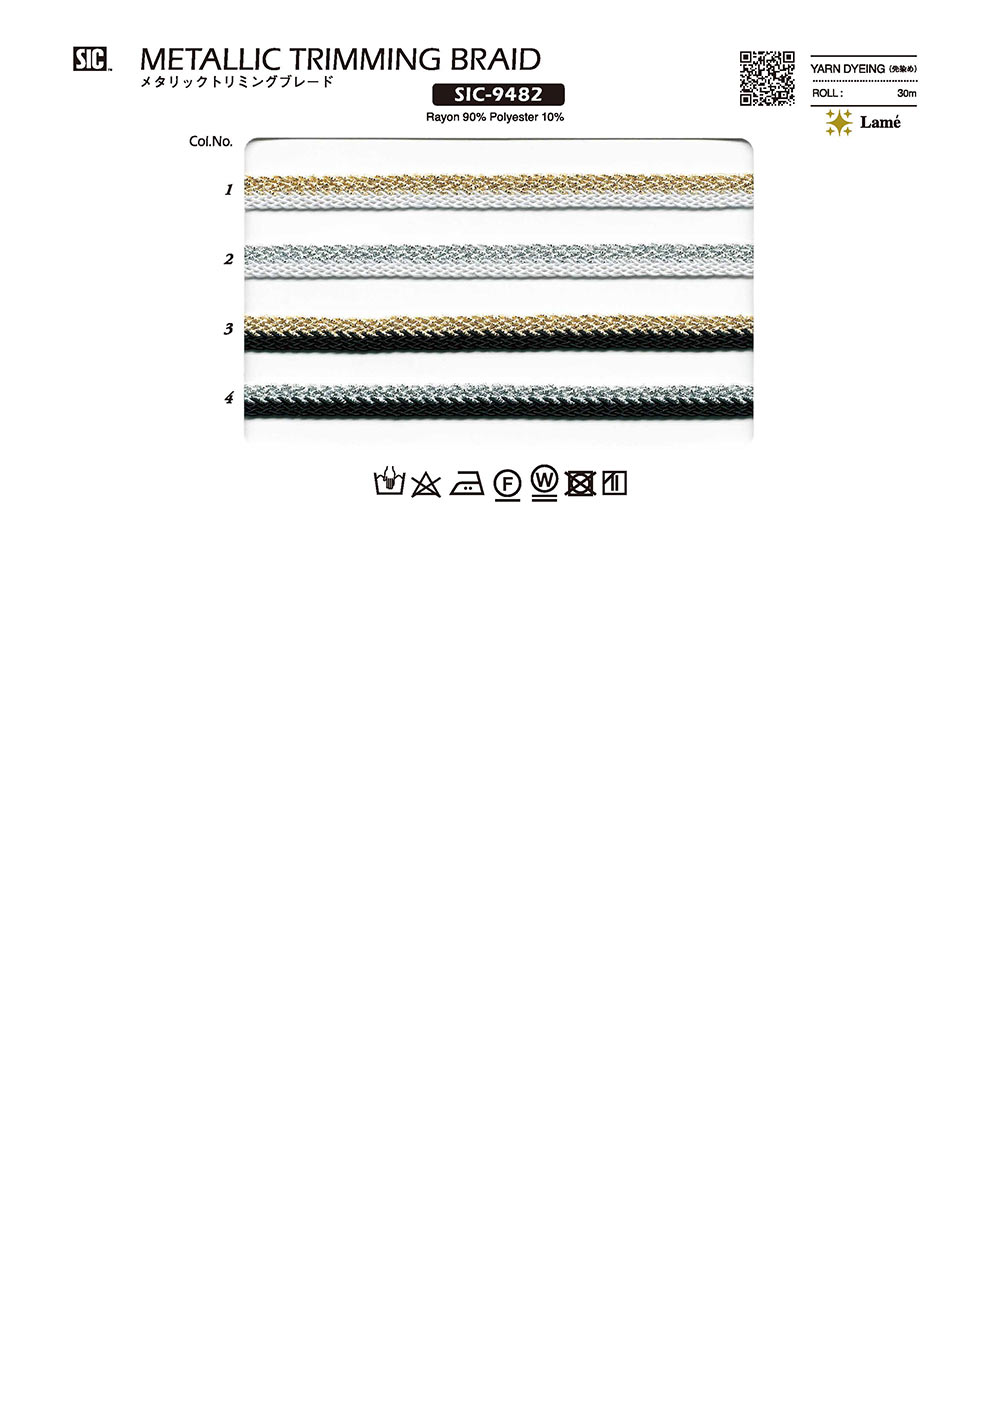 SIC-9482 메탈릭 트림 블레이드[리본 테이프 코드] SHINDO(SIC)